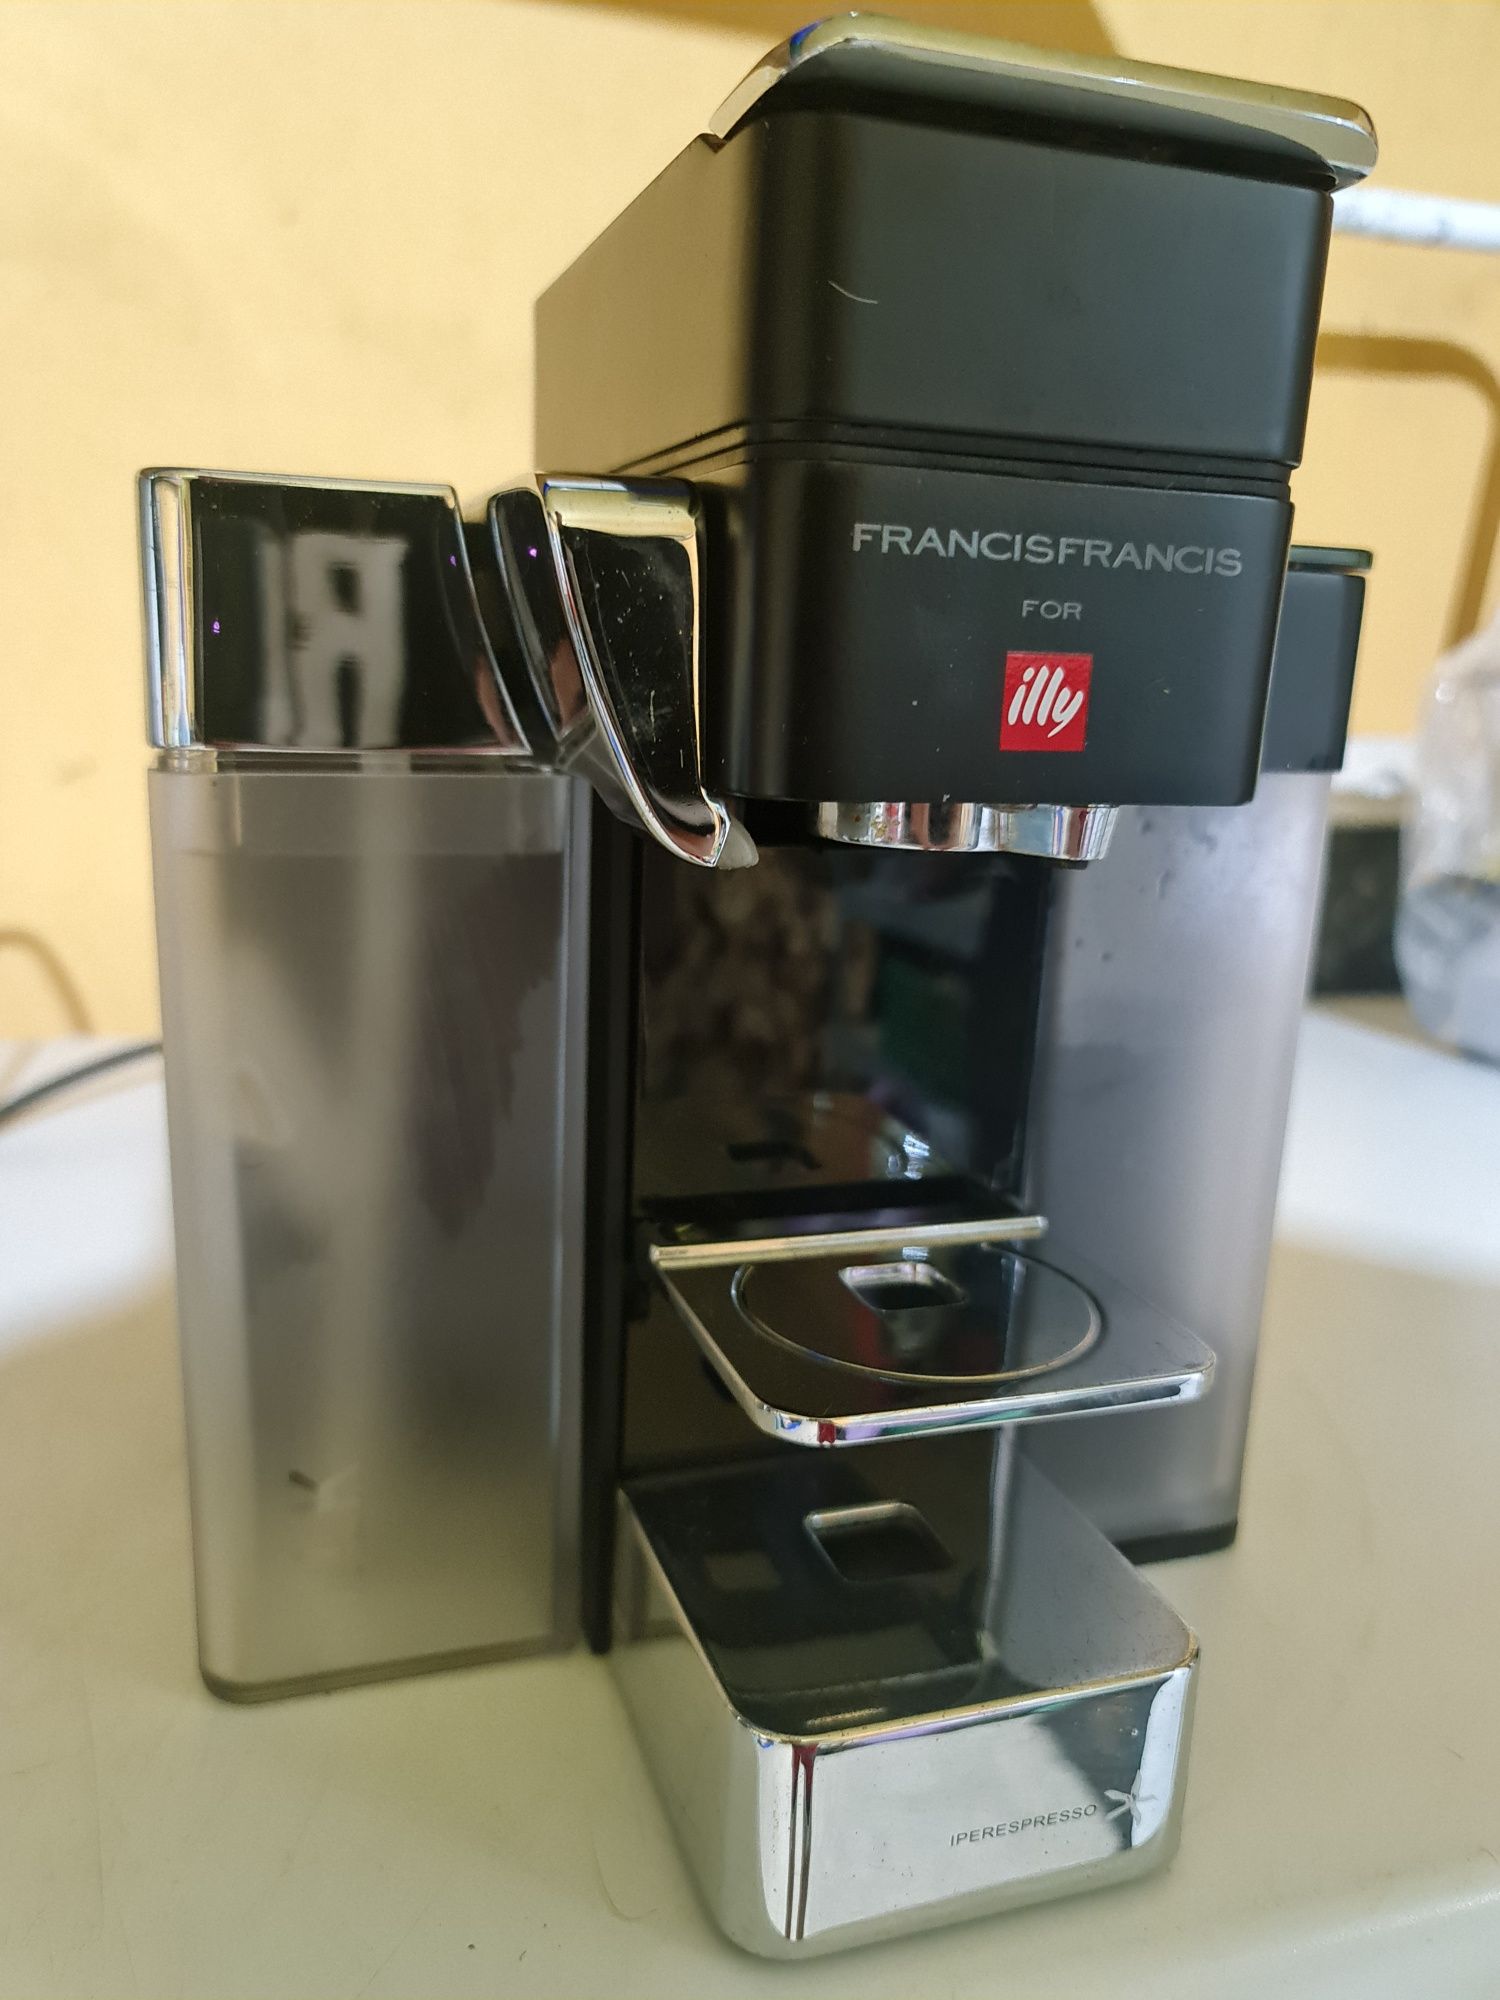 Máquina de café Francis Francis para Illy Y5